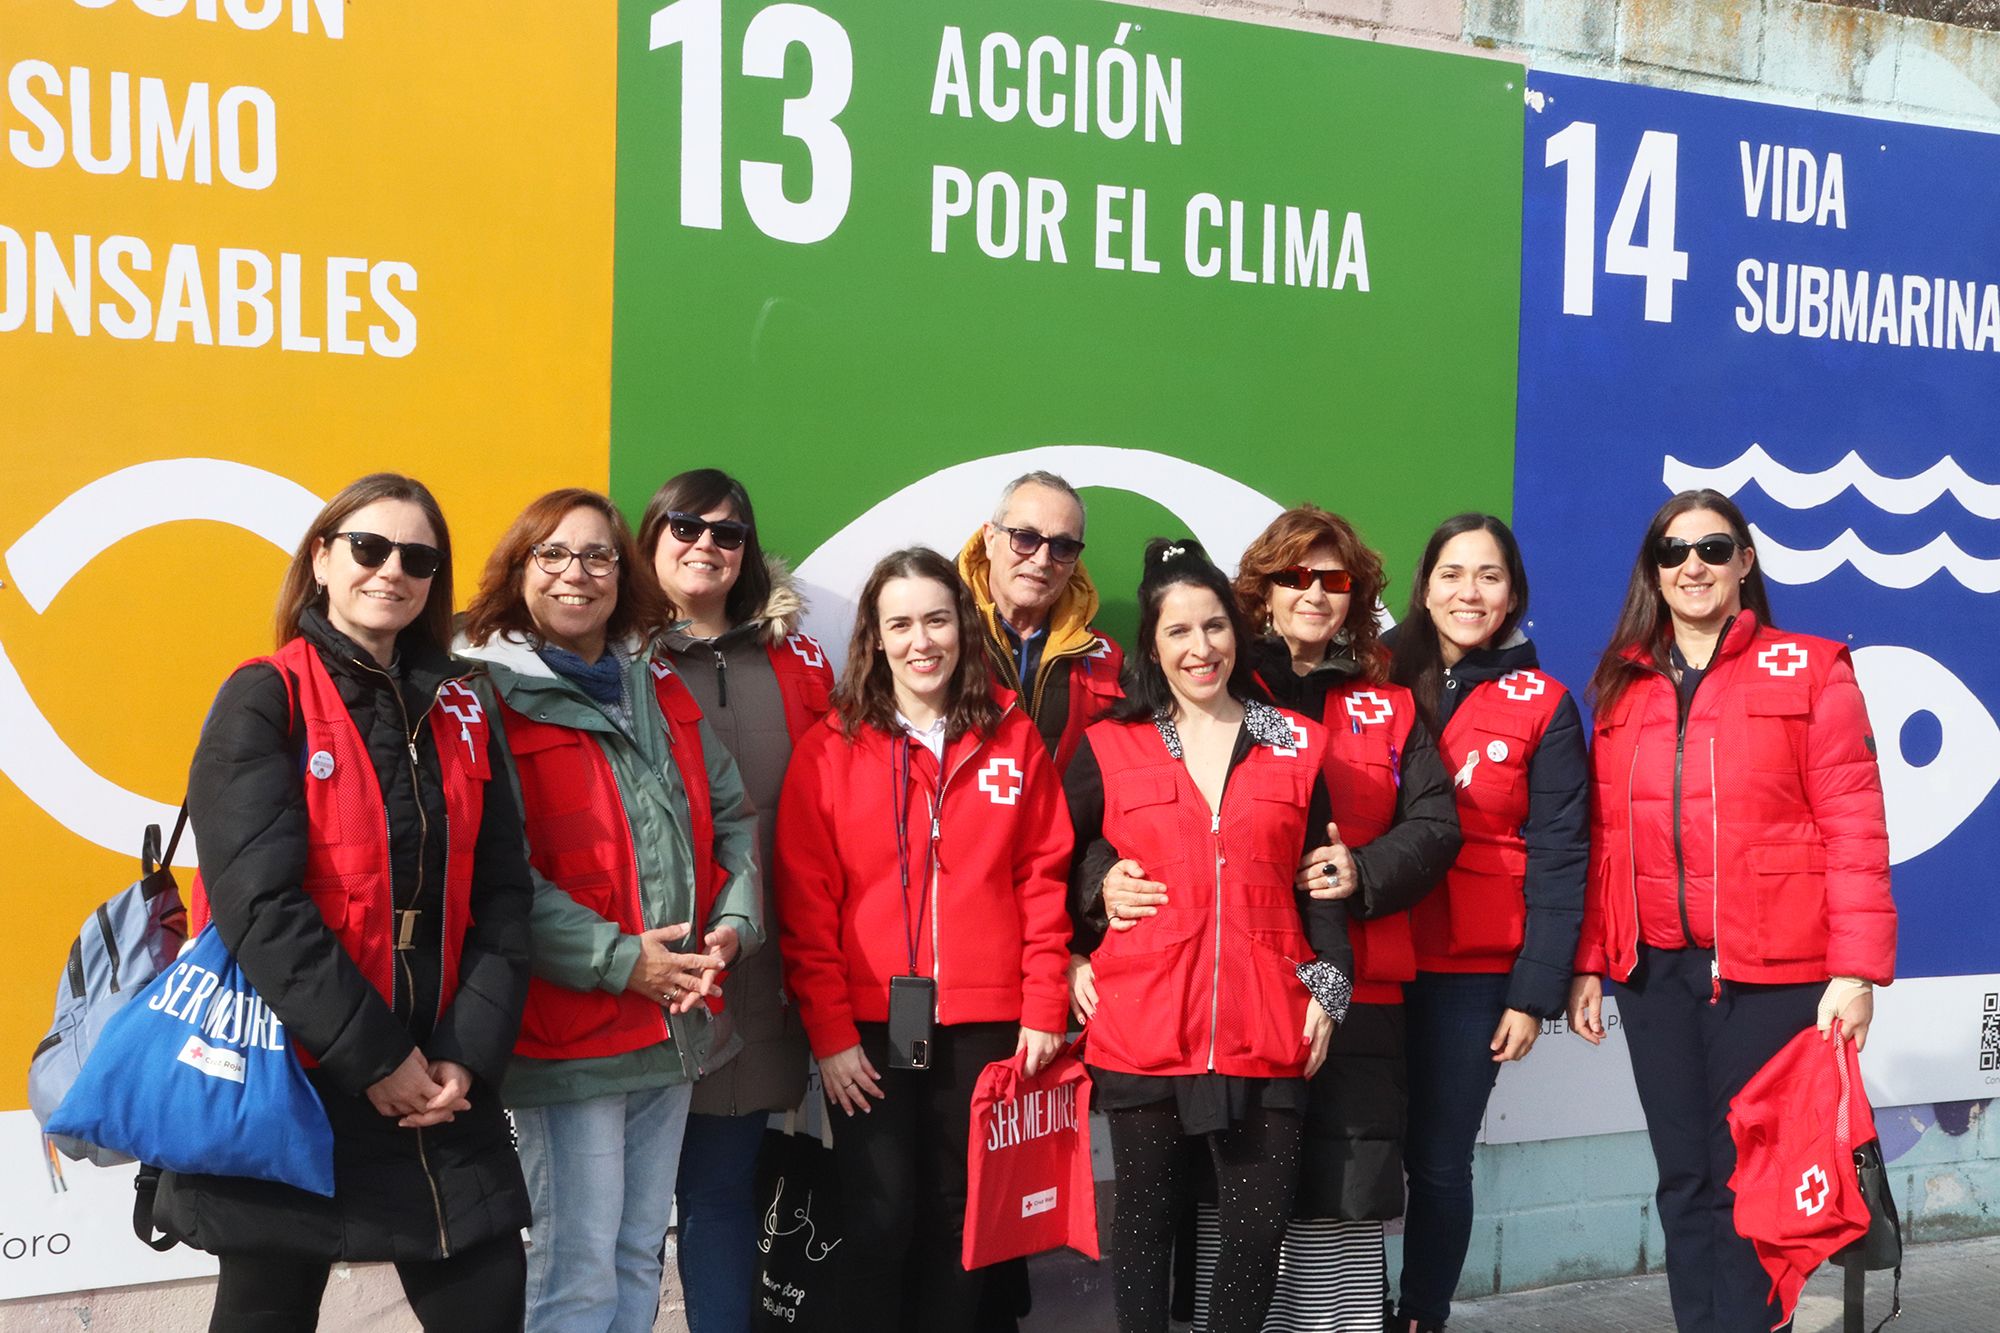 Mural de Cruz Roja Zamora con los Objetivos de Desarrollo Sostenible